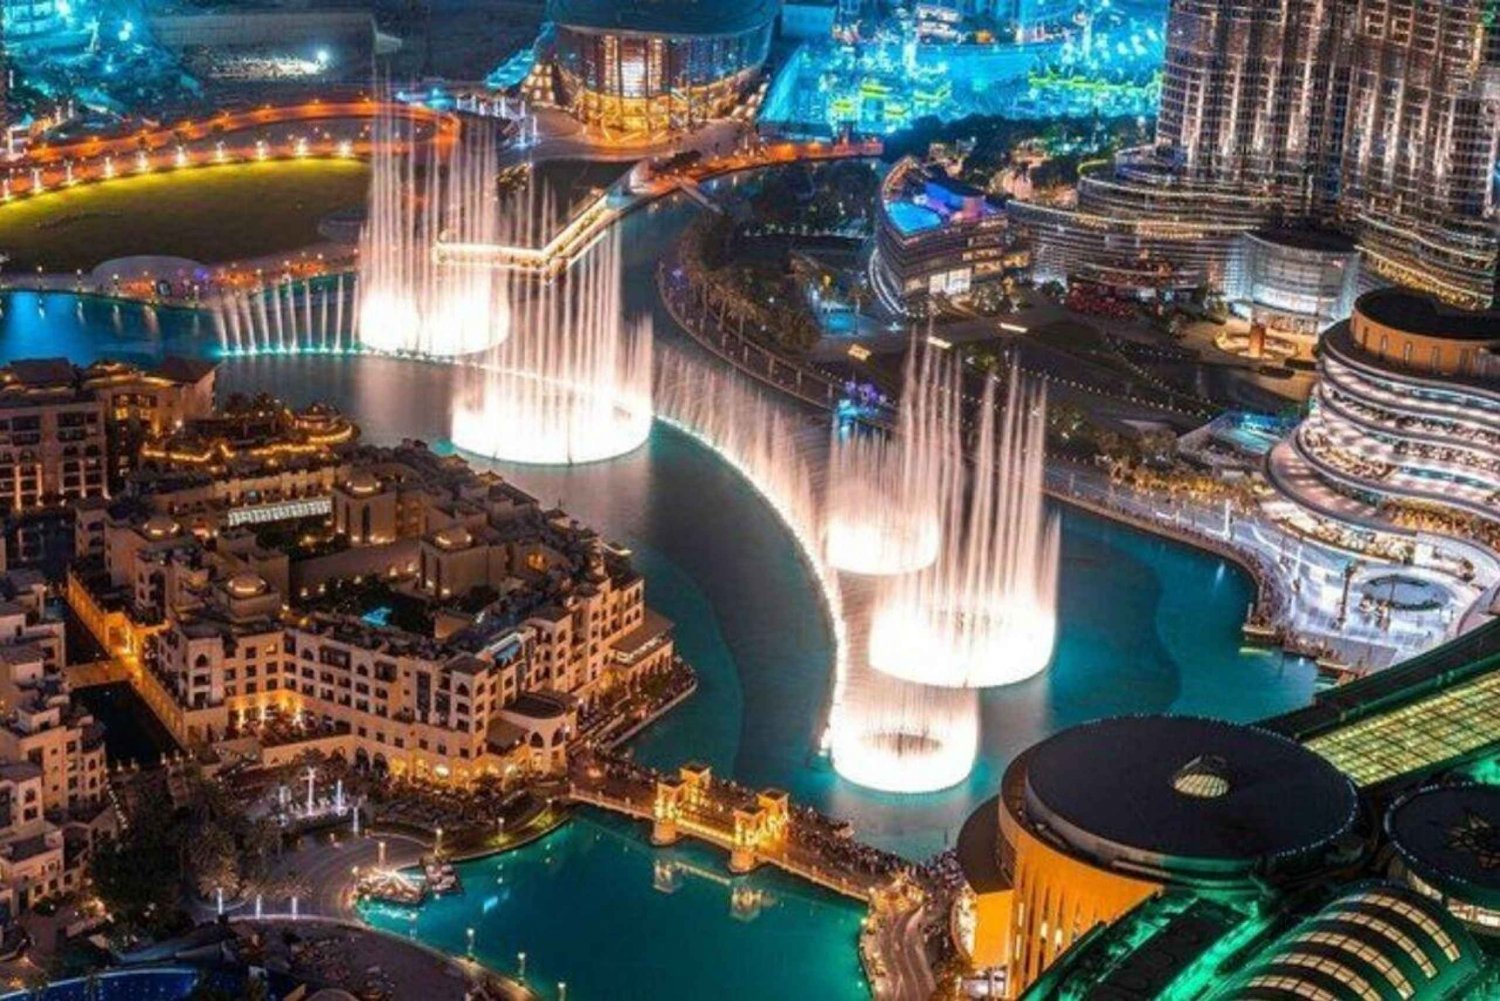 Dubai: Nattlig guidad stadsrundtur med skåpbil med fontänshow